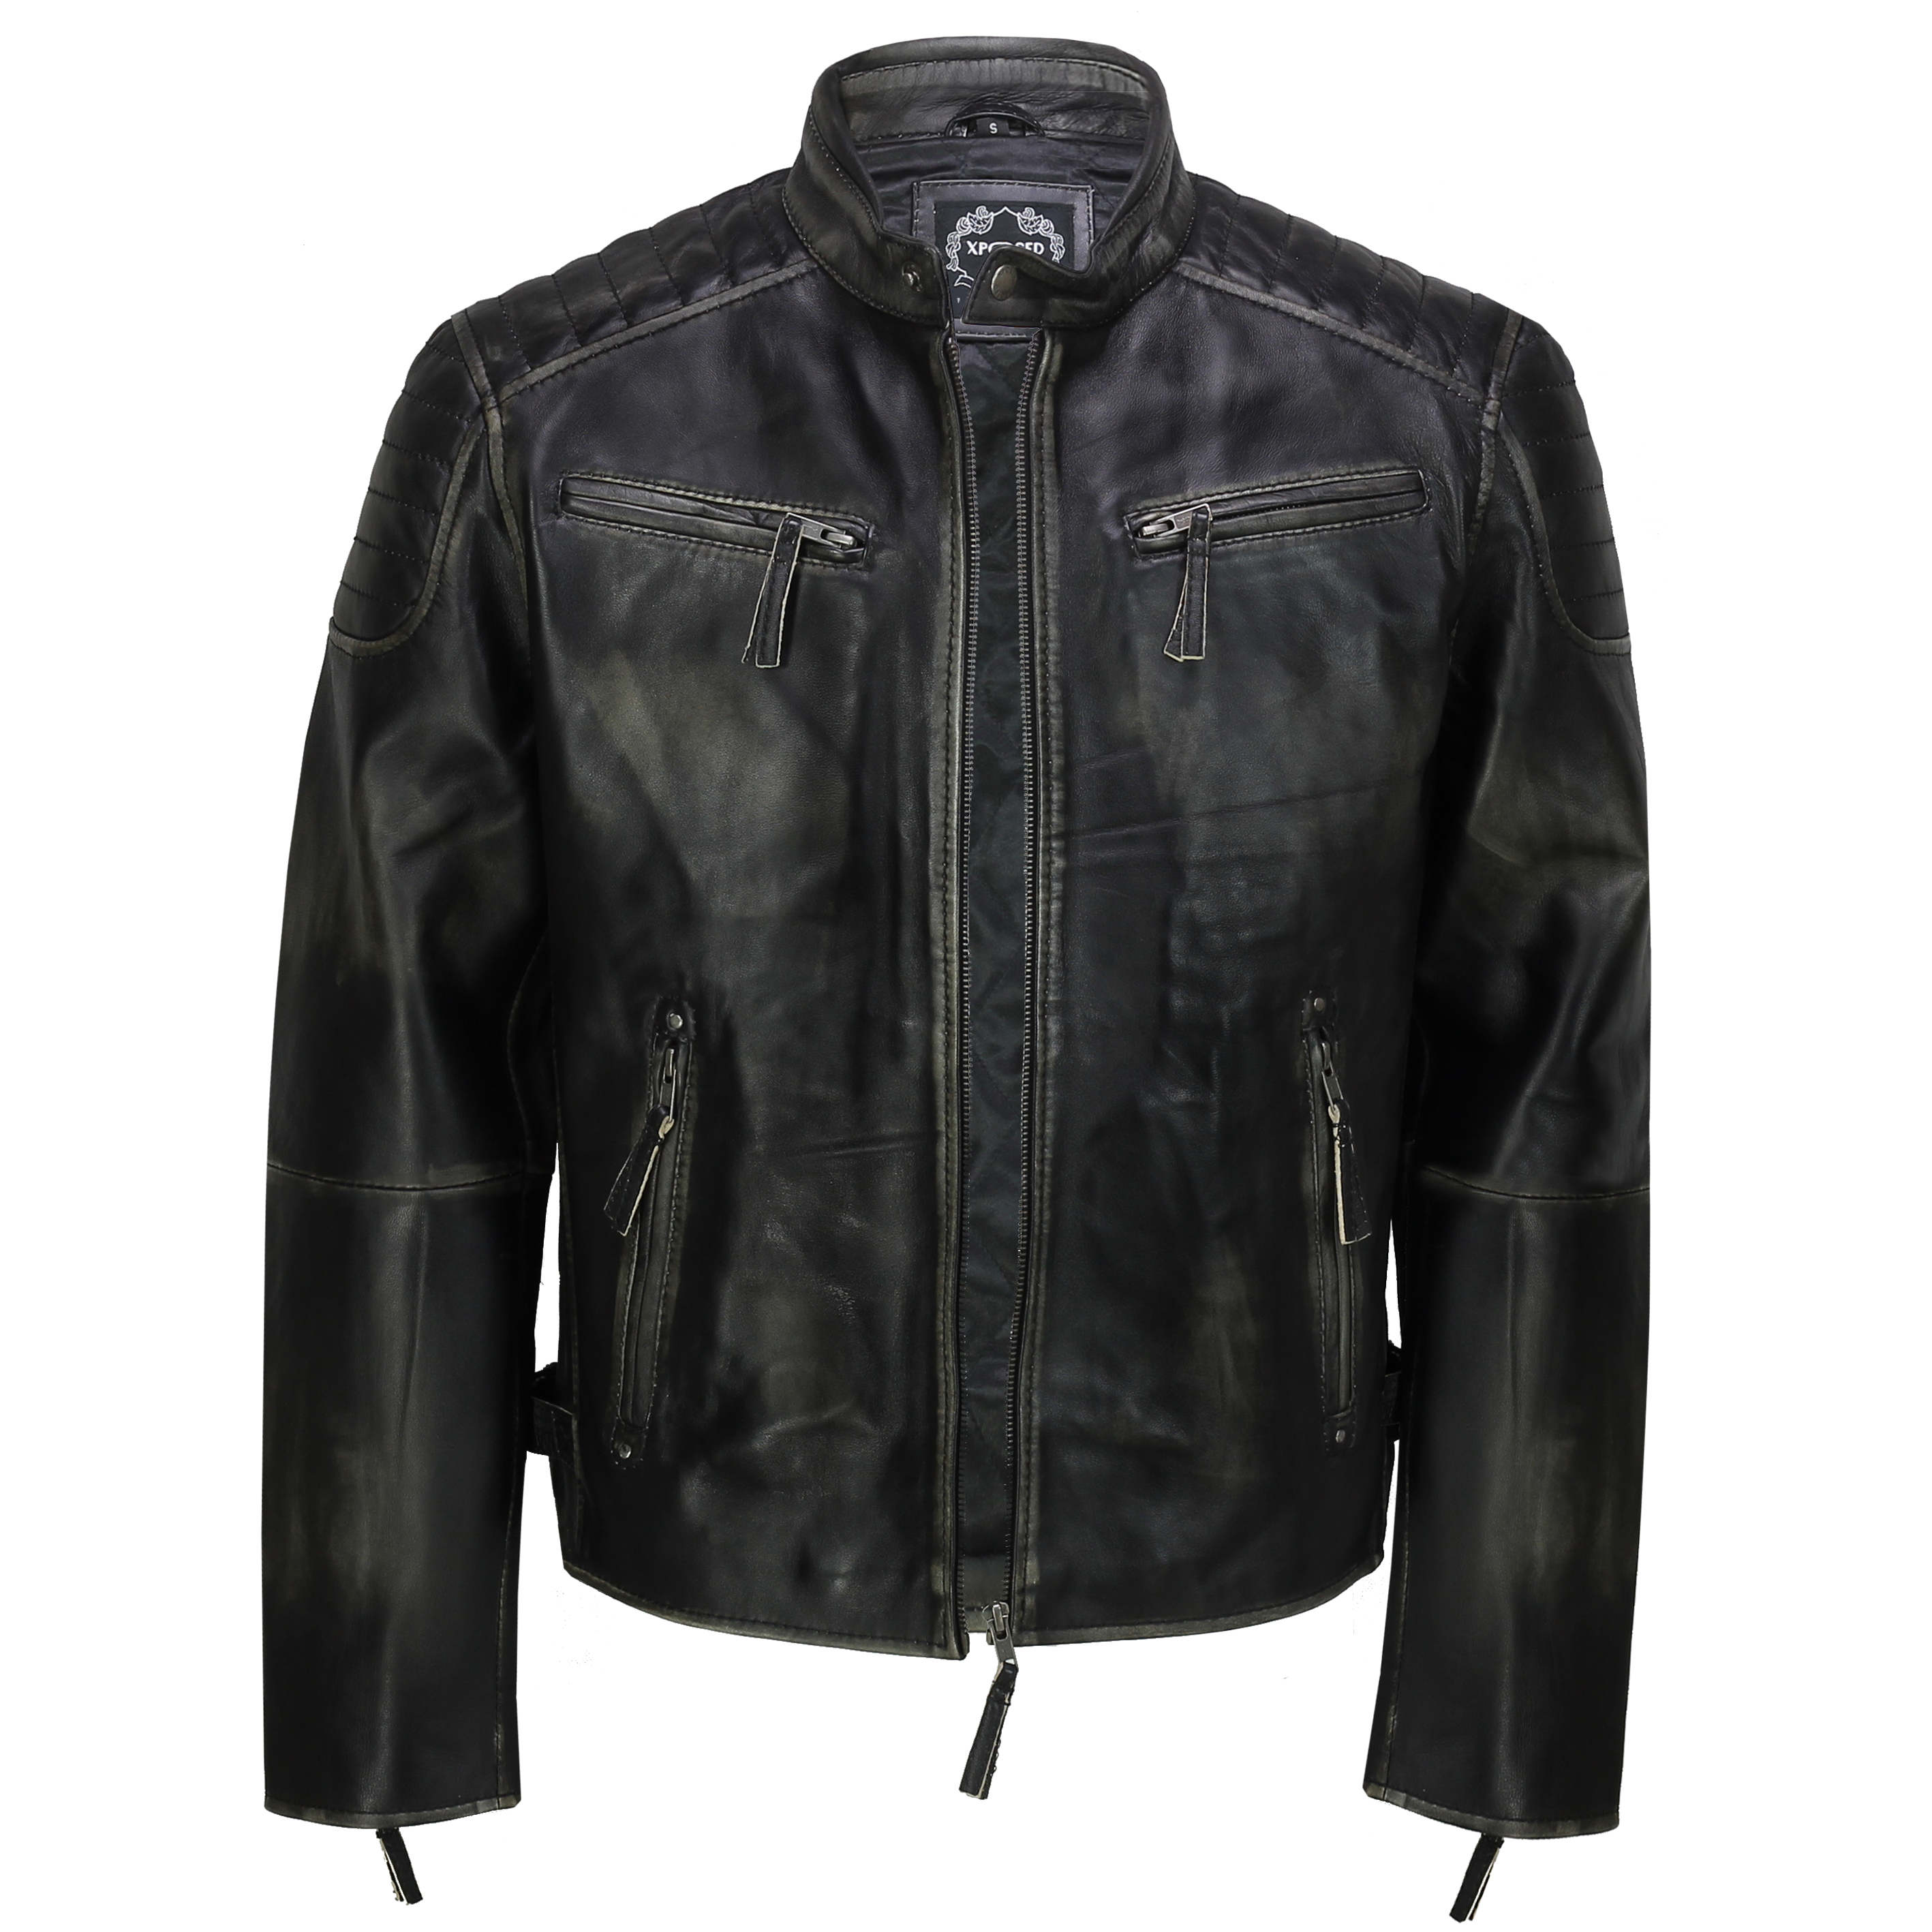 Señores Biker chaqueta de cuero auténtico estilo vintage chaqueta Biker óptica Leather chaqueta 